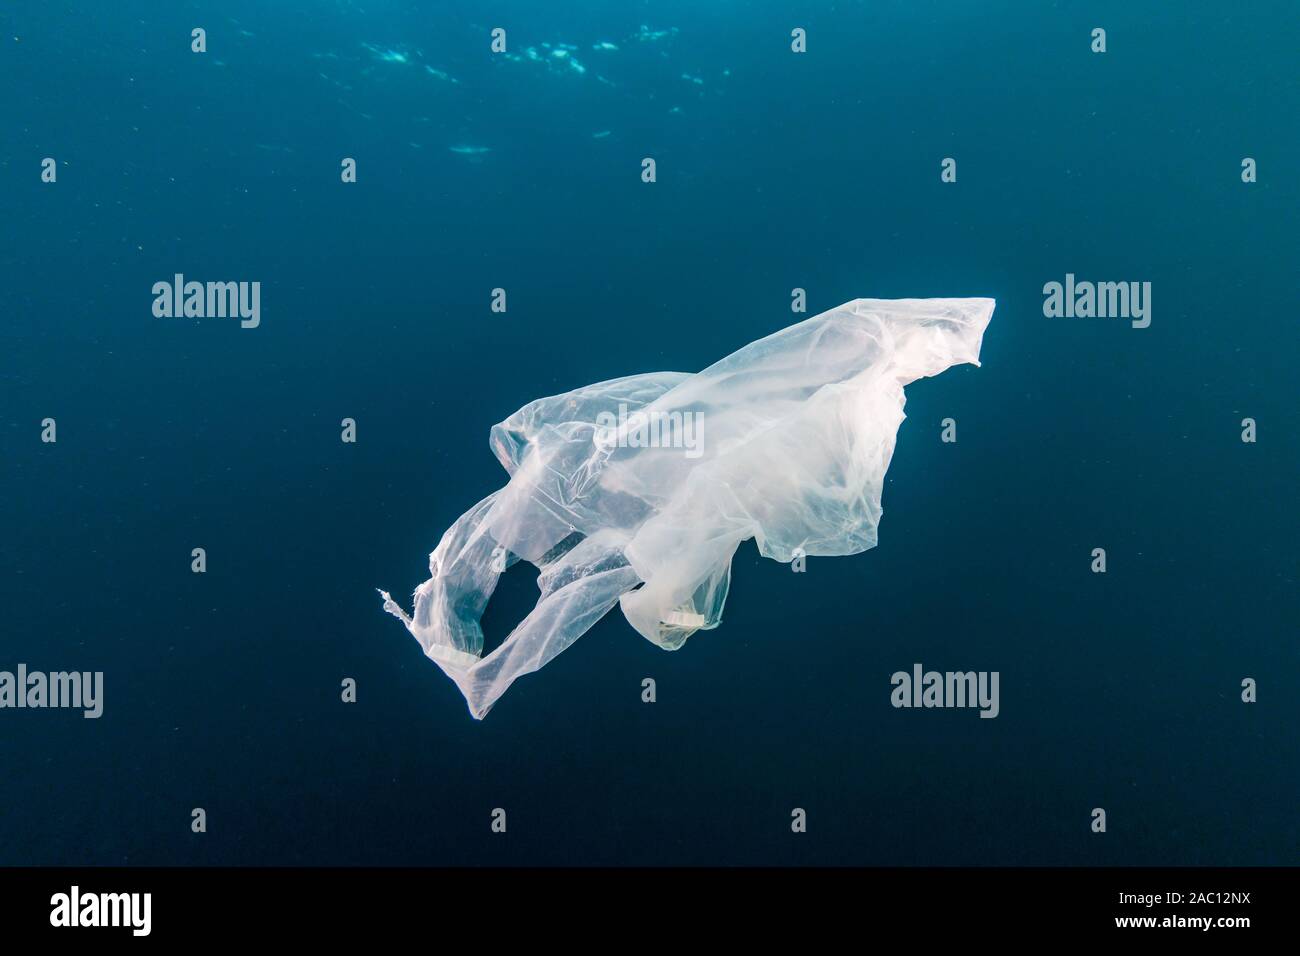 La pollution plastique dans l'Océan - un sac en plastique sous la dérive dans un océan tropical Banque D'Images